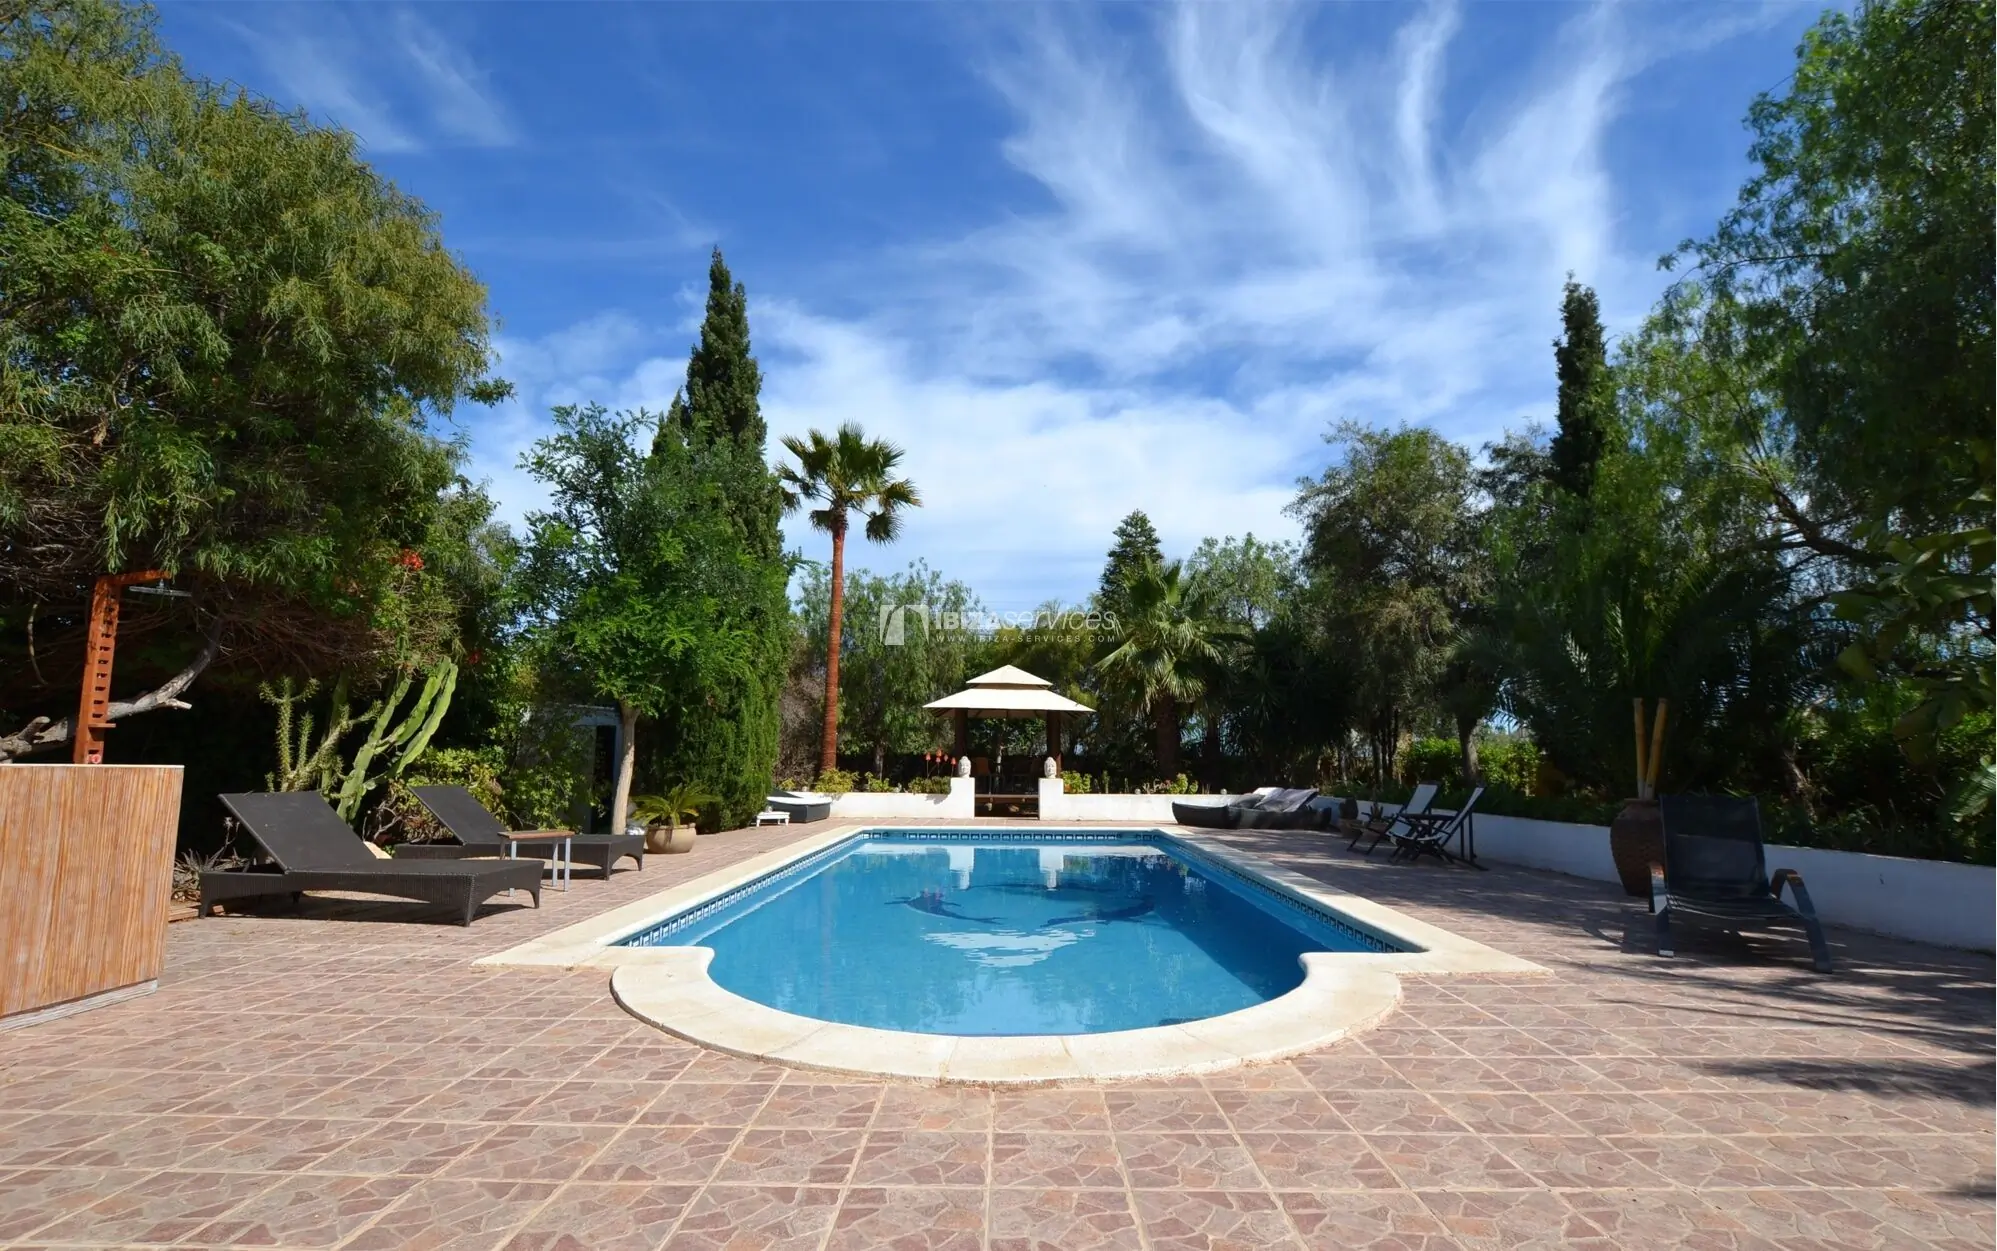 Charming villa with pool in San jordi – weekly rental